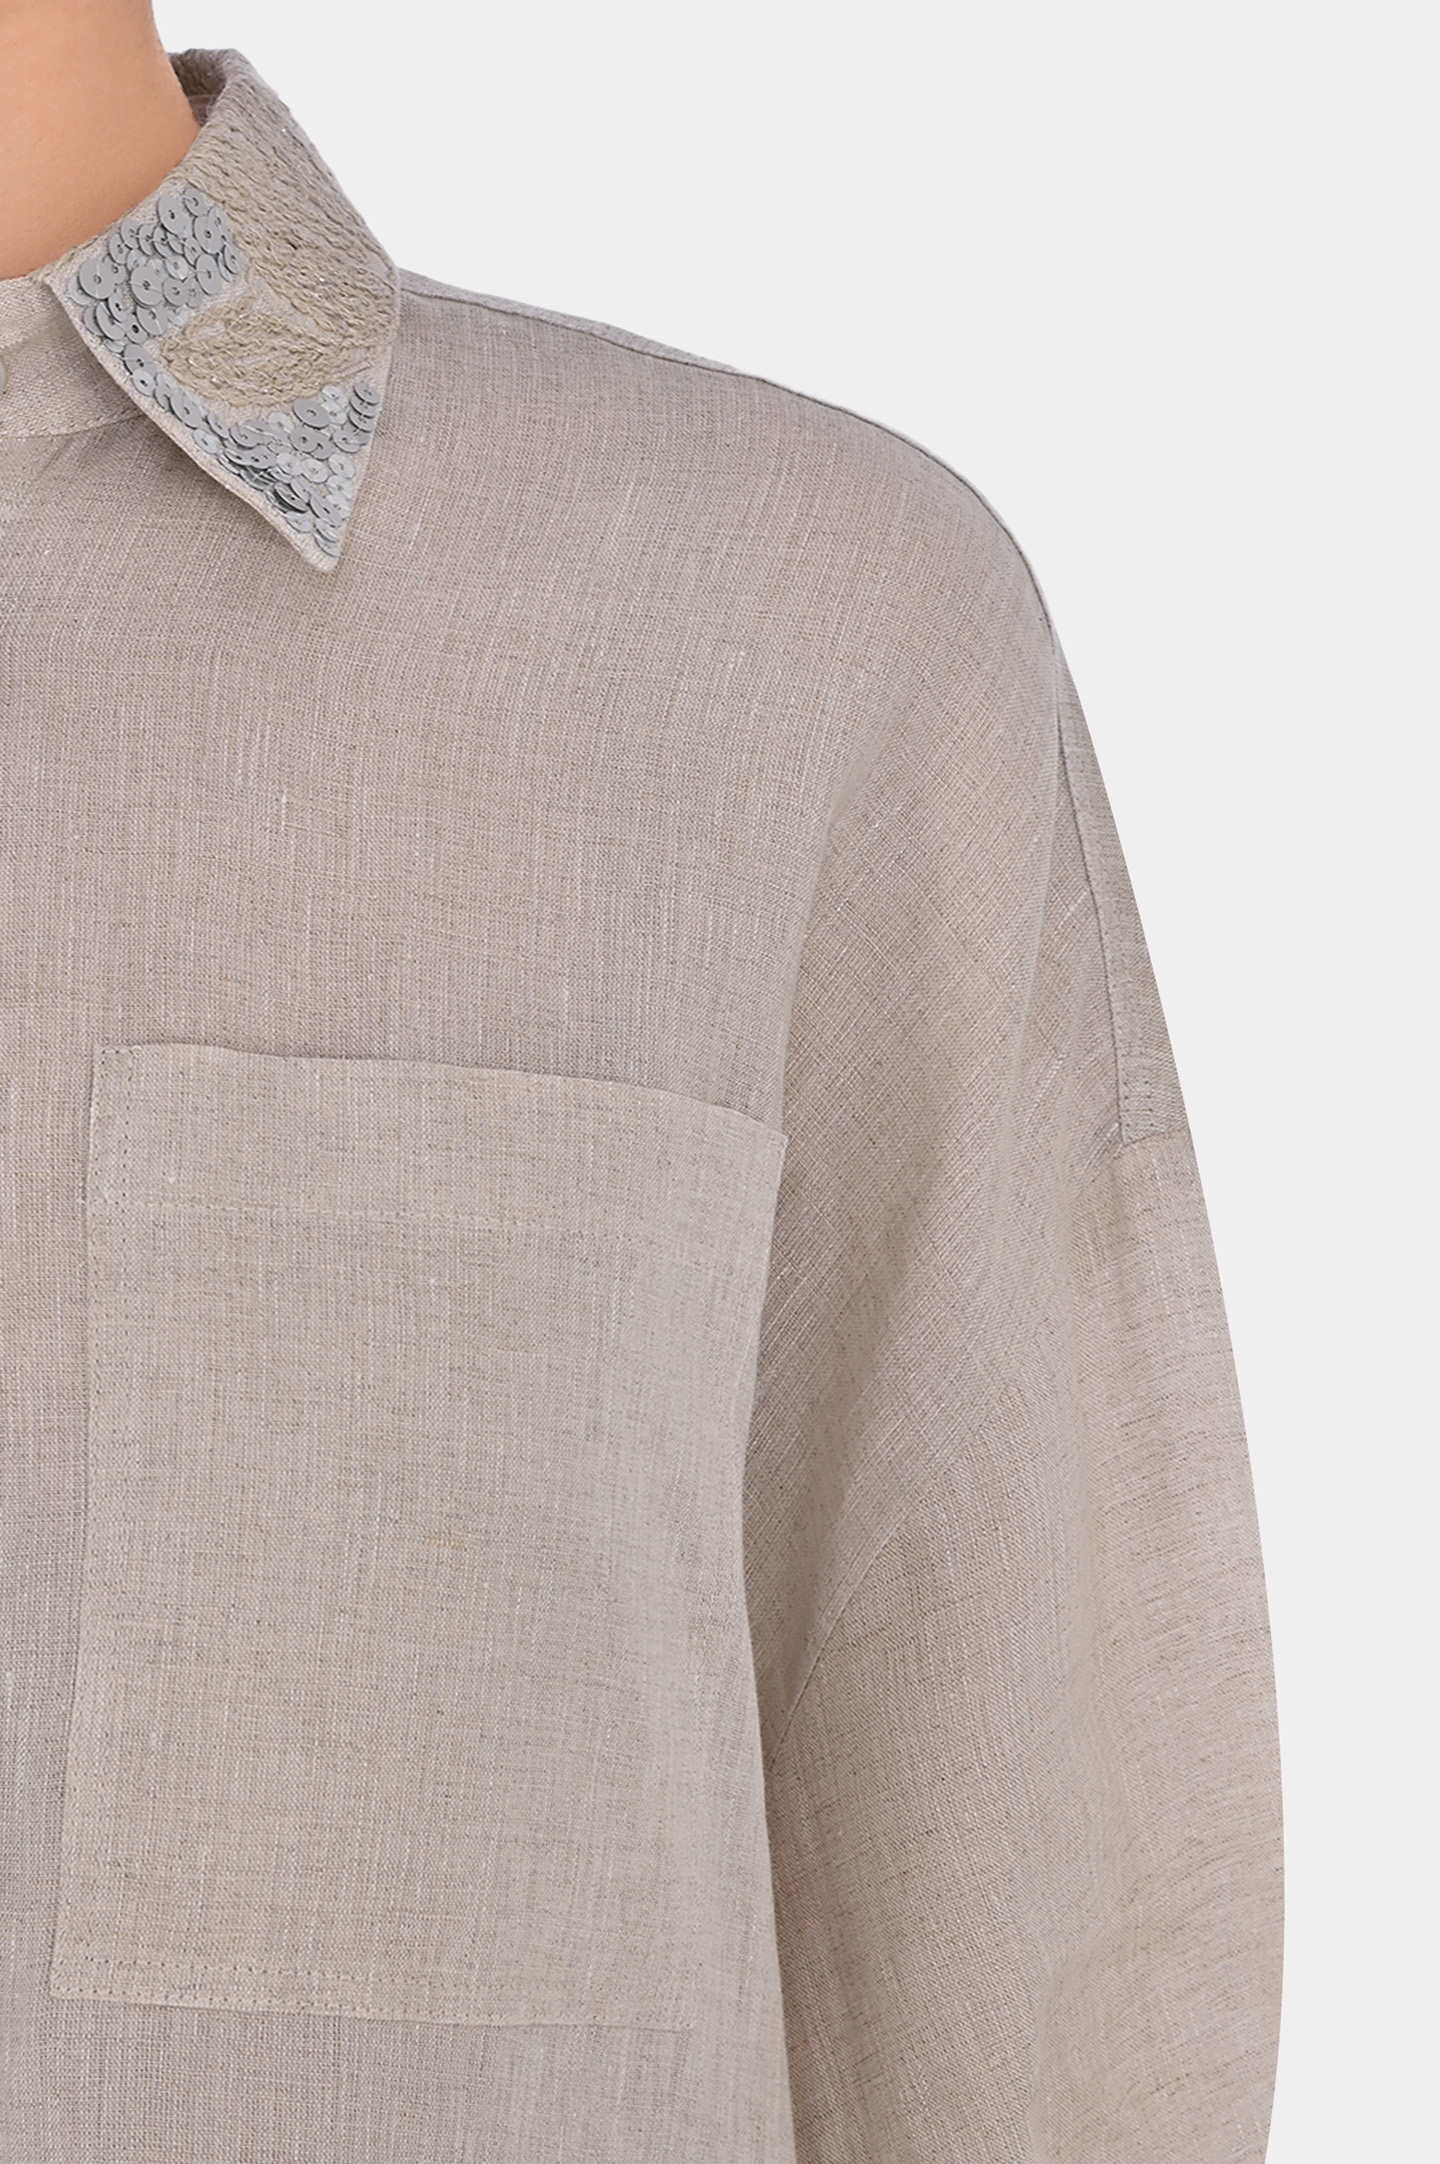 Льняная рубашка свободного кроя с пайетками BRUNELLO  CUCINELLI MB650NP226, цвет: Светло-бежевый, Женский